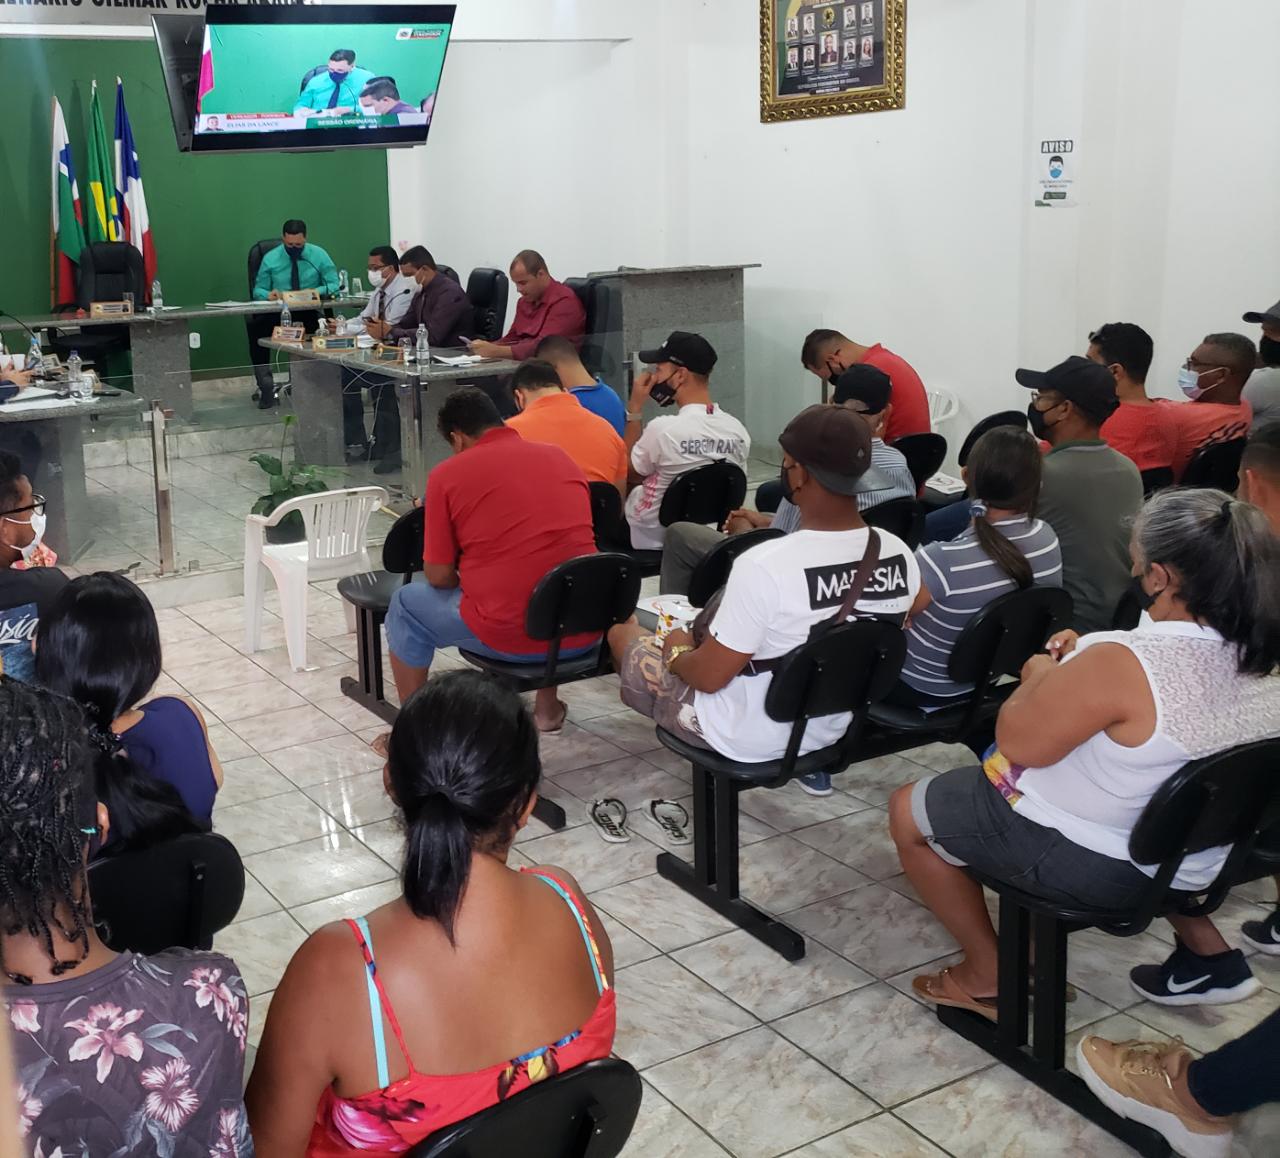 Presidente da Câmara de Vereadores de Itagimirim adia aprovação de projeto e ato pode provocar paralisação de serviços fundamentais no município 35